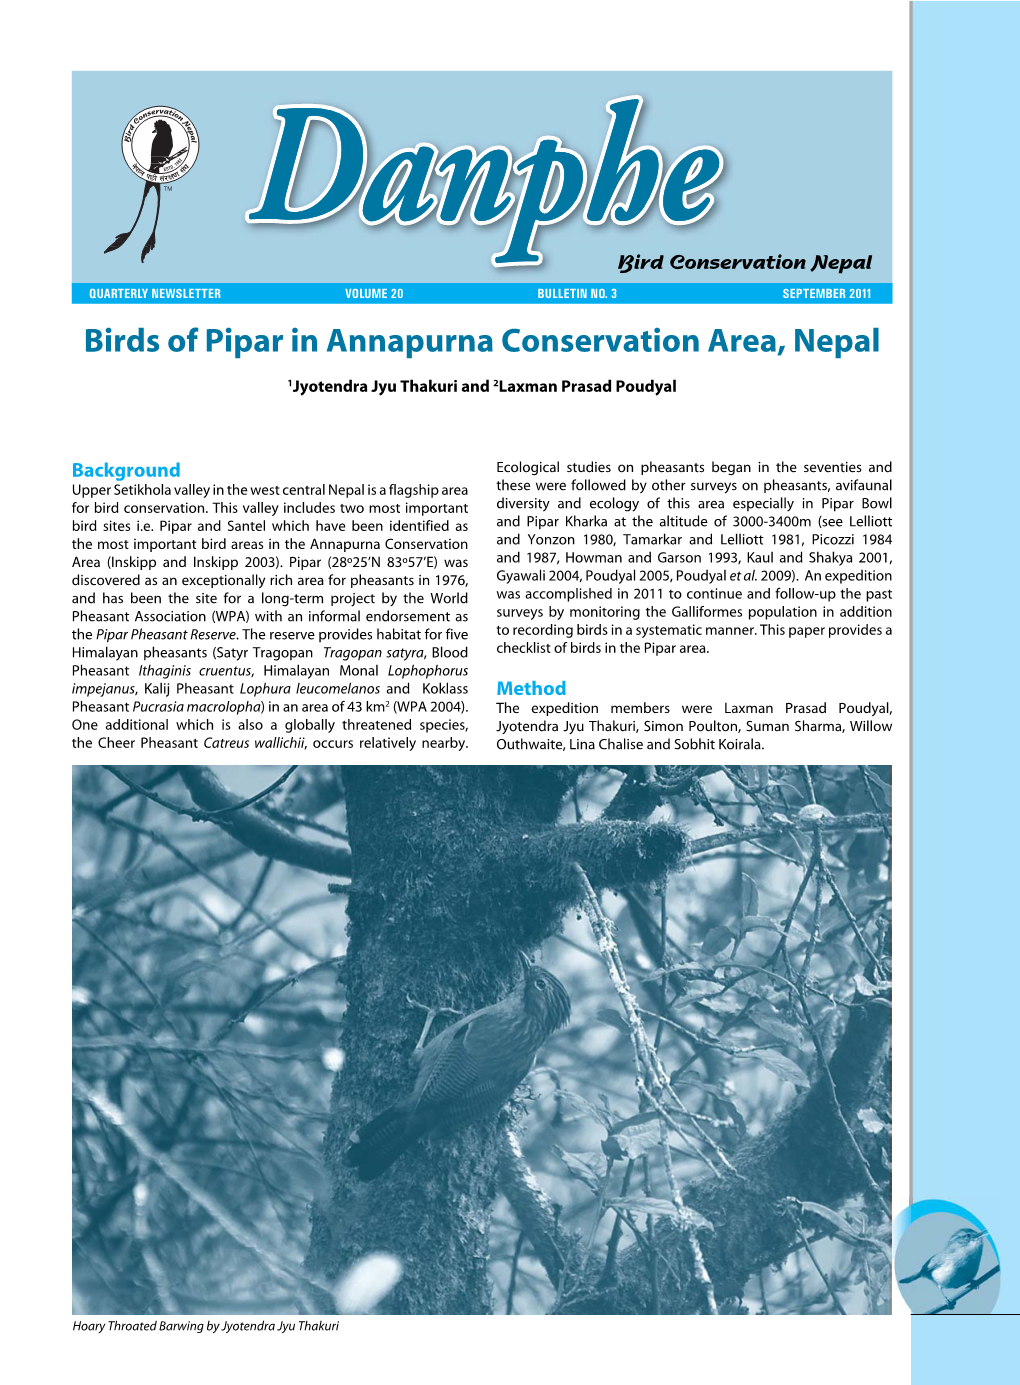 Danphe Newsletter for Bird Conservation Nepal